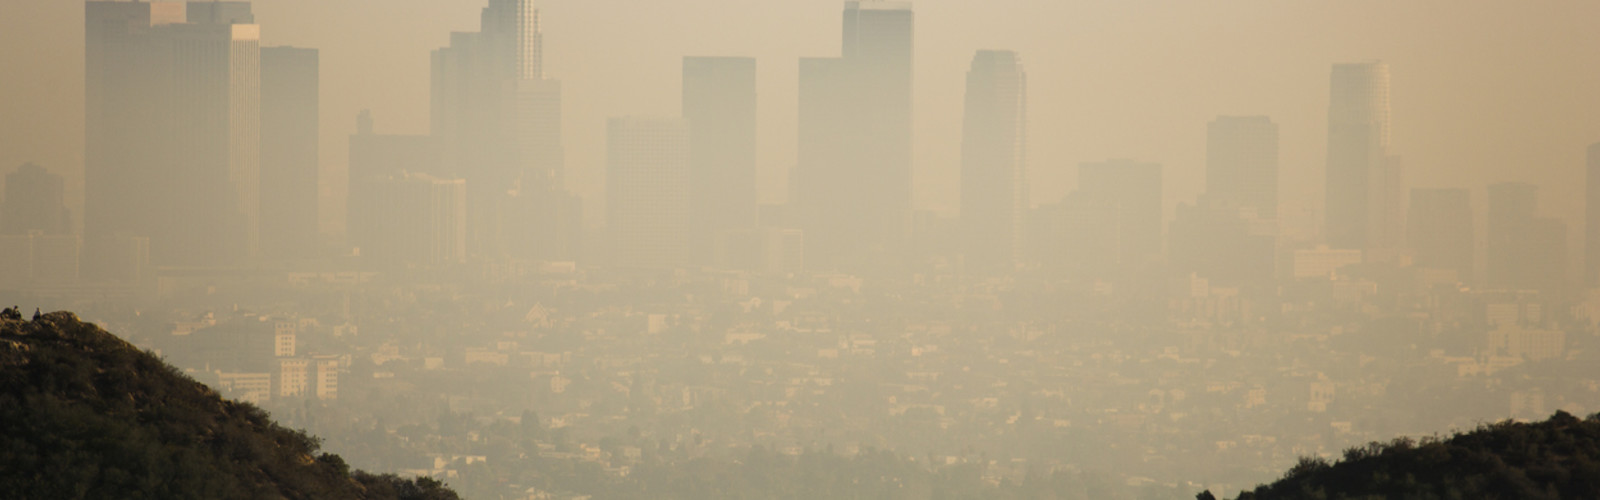 Smog qui enveloppe la ville de Los Angeles.